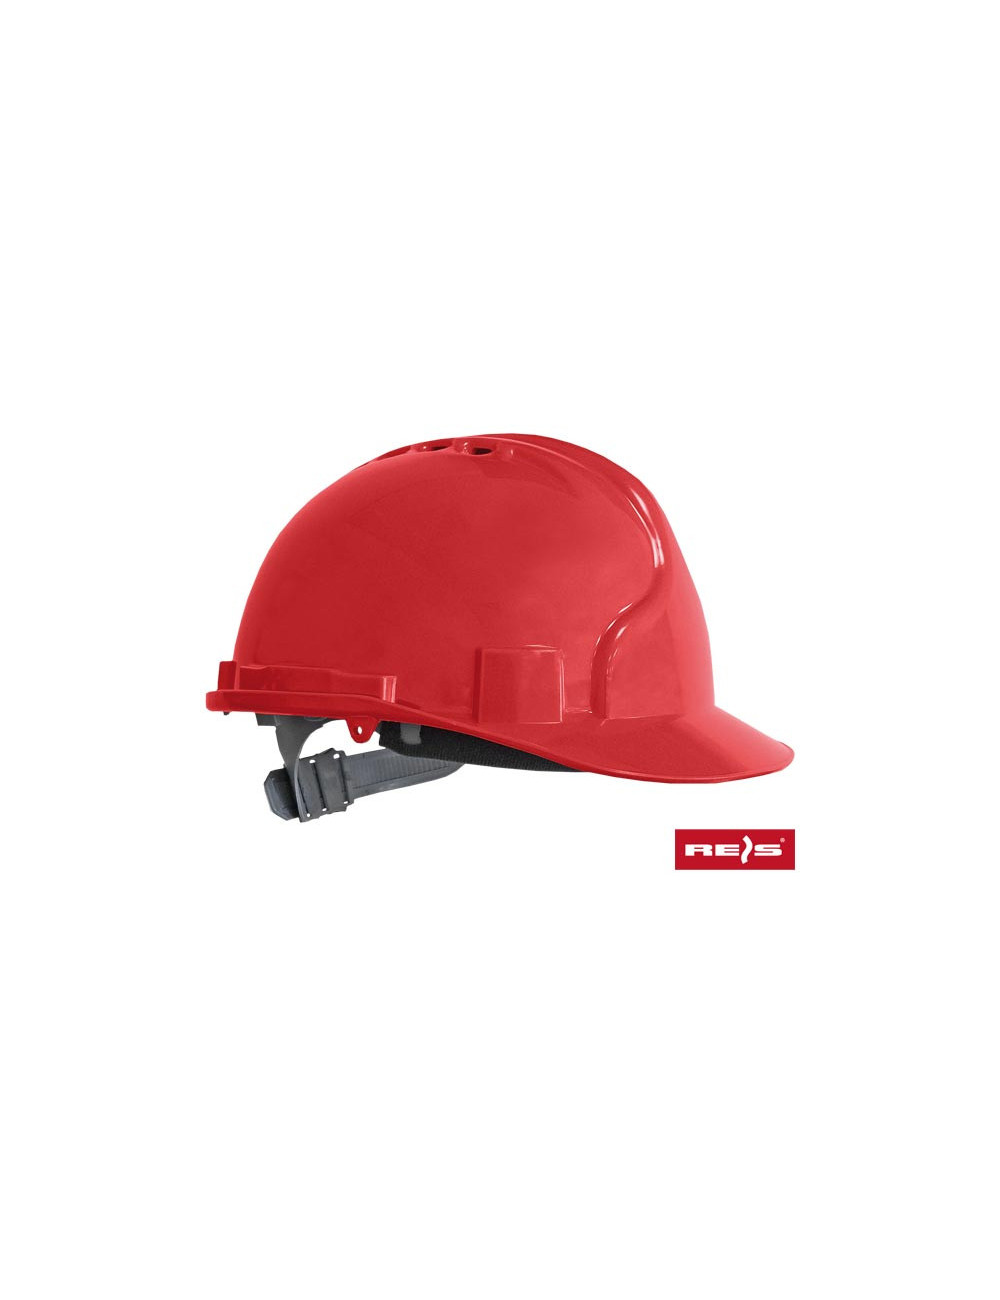 Safety helmet kas c red Reis